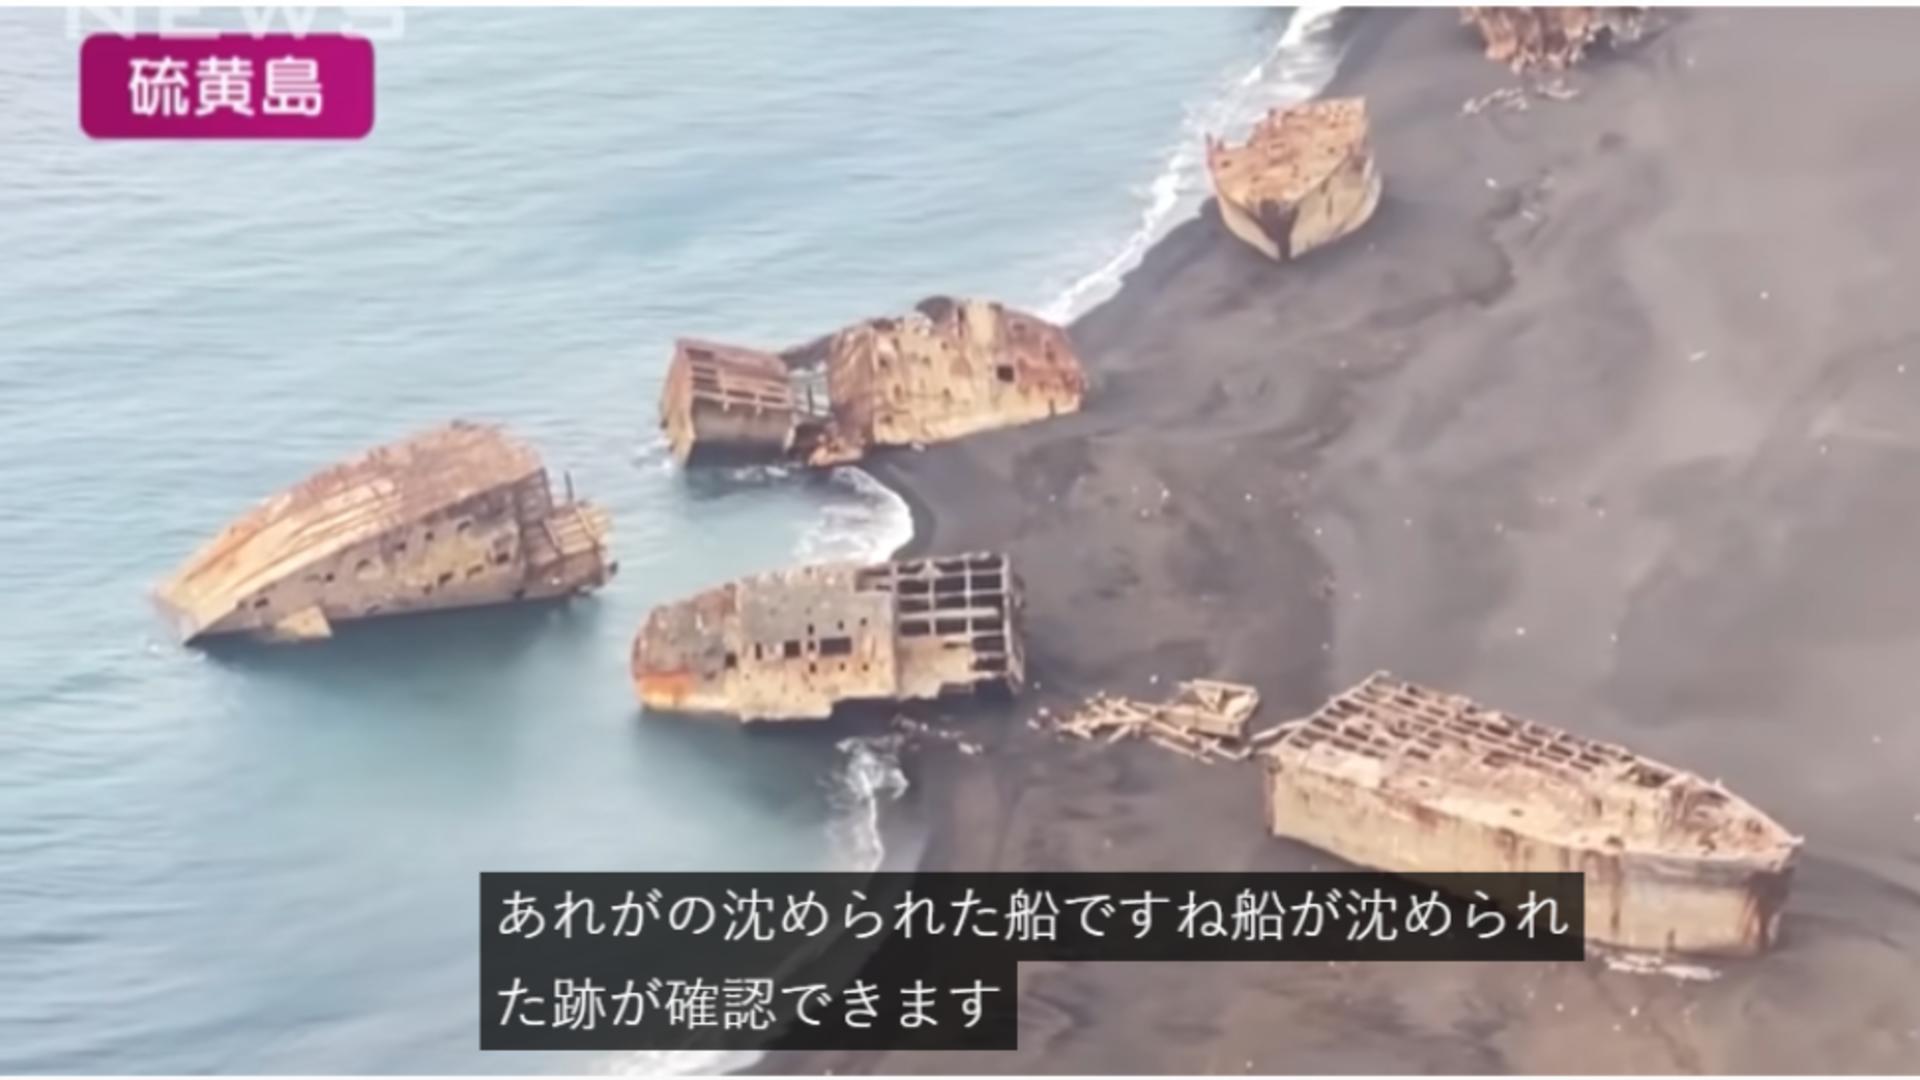 Nave fantomă apărute pe coasta Japonie/ Captură video 